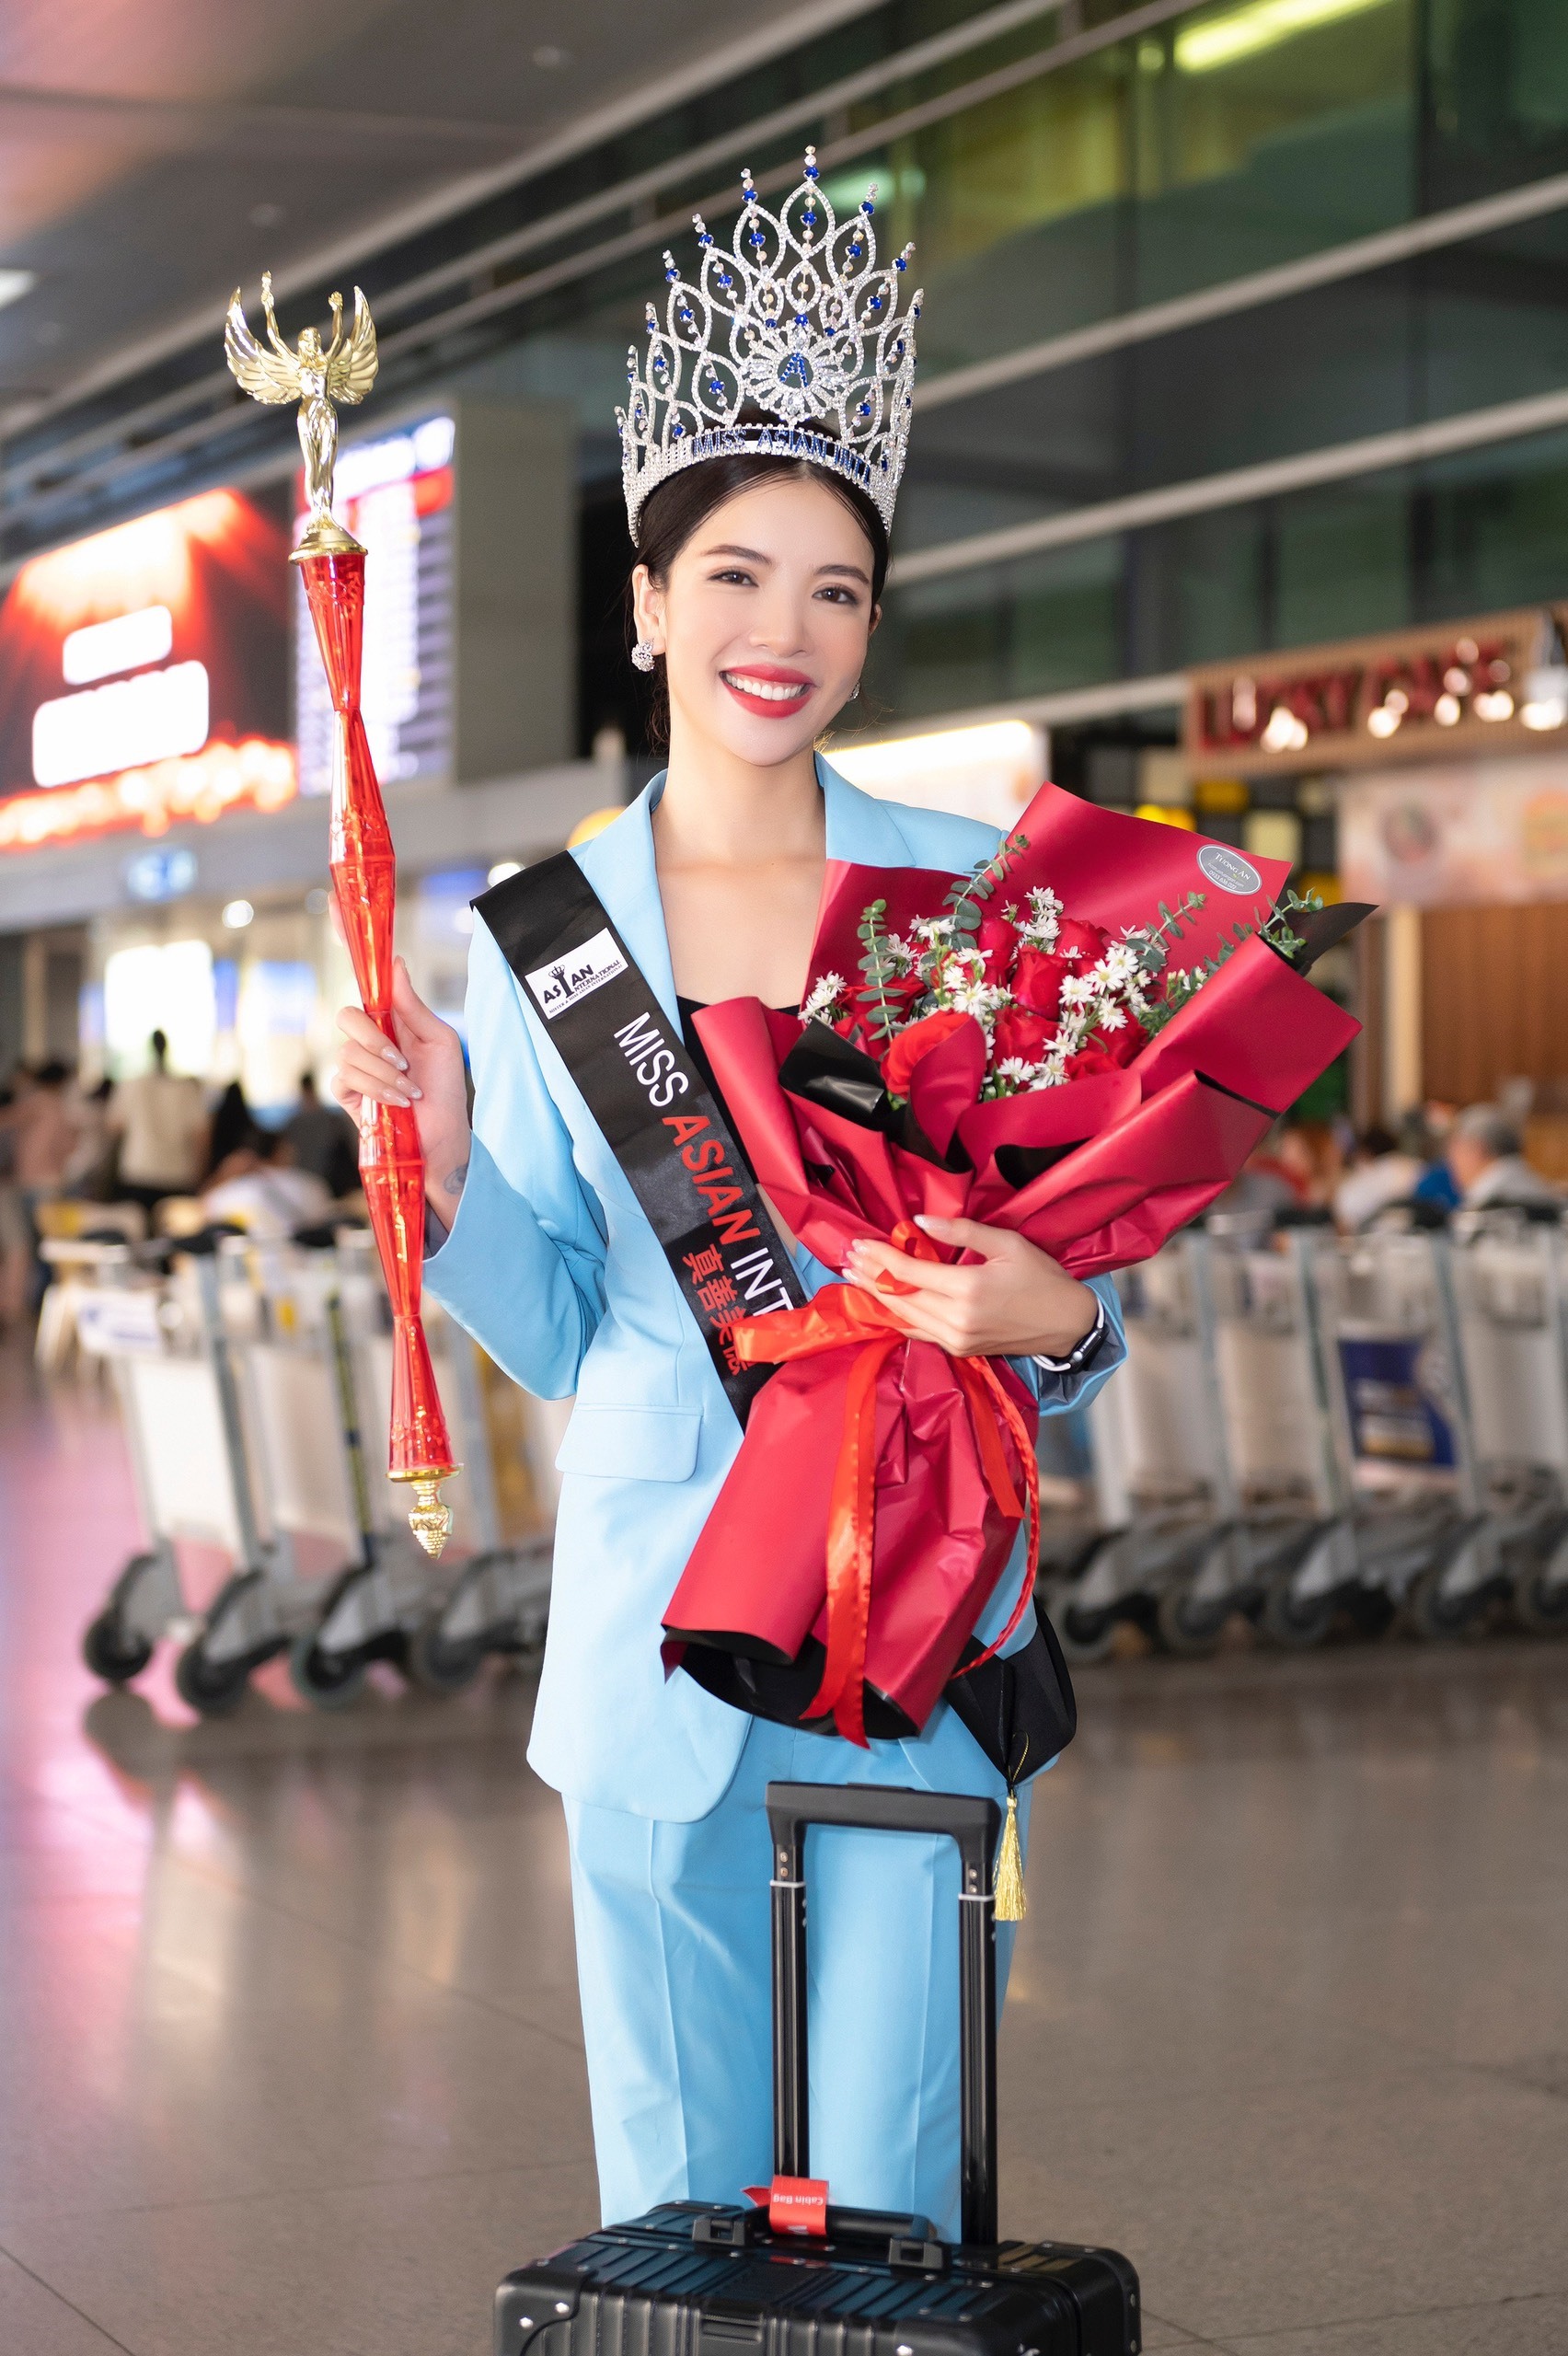 Sau khi đăng quang Miss Asian International 2022 (Hoa hậu Châu Á), Nguyễn Thùy Dung trở về nước sau 3 ngày thực hiện các hoạt động của Tân hoa hậu tại Malaysia. Cô có mặt tại sân bay Tân Sơn Nhất (TP.HCM) vào chiều tối ngày 15.12. Người thân, bạn bè và nhiều khán giả đến chúc mừng Thùy Dung.